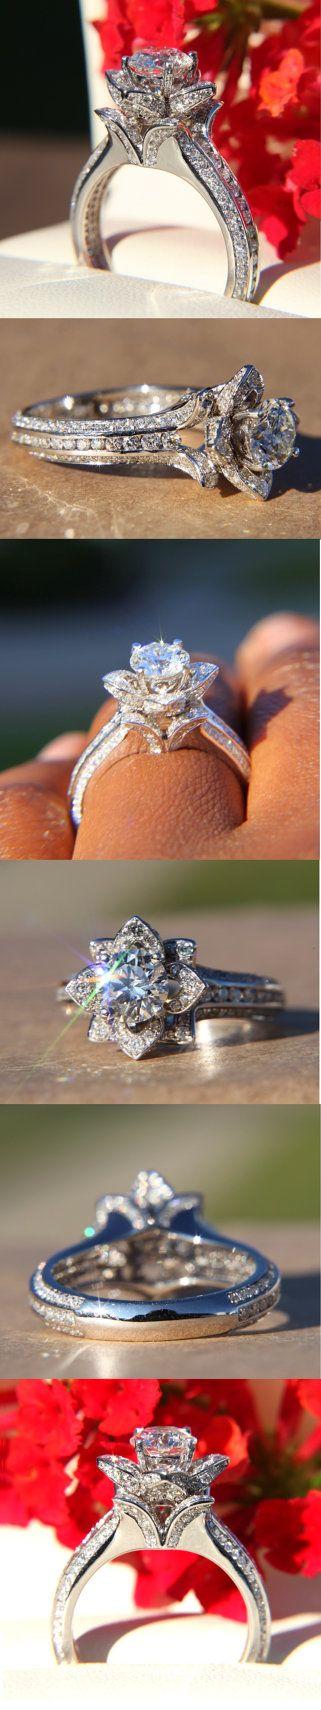 زفاف - Gorgeous UNIQUE Flower Rose Diamond Engagement Ring - 2.50 Carat - 14K White Gold - Wedding - Brides - Luxury - Custom Made - FL01